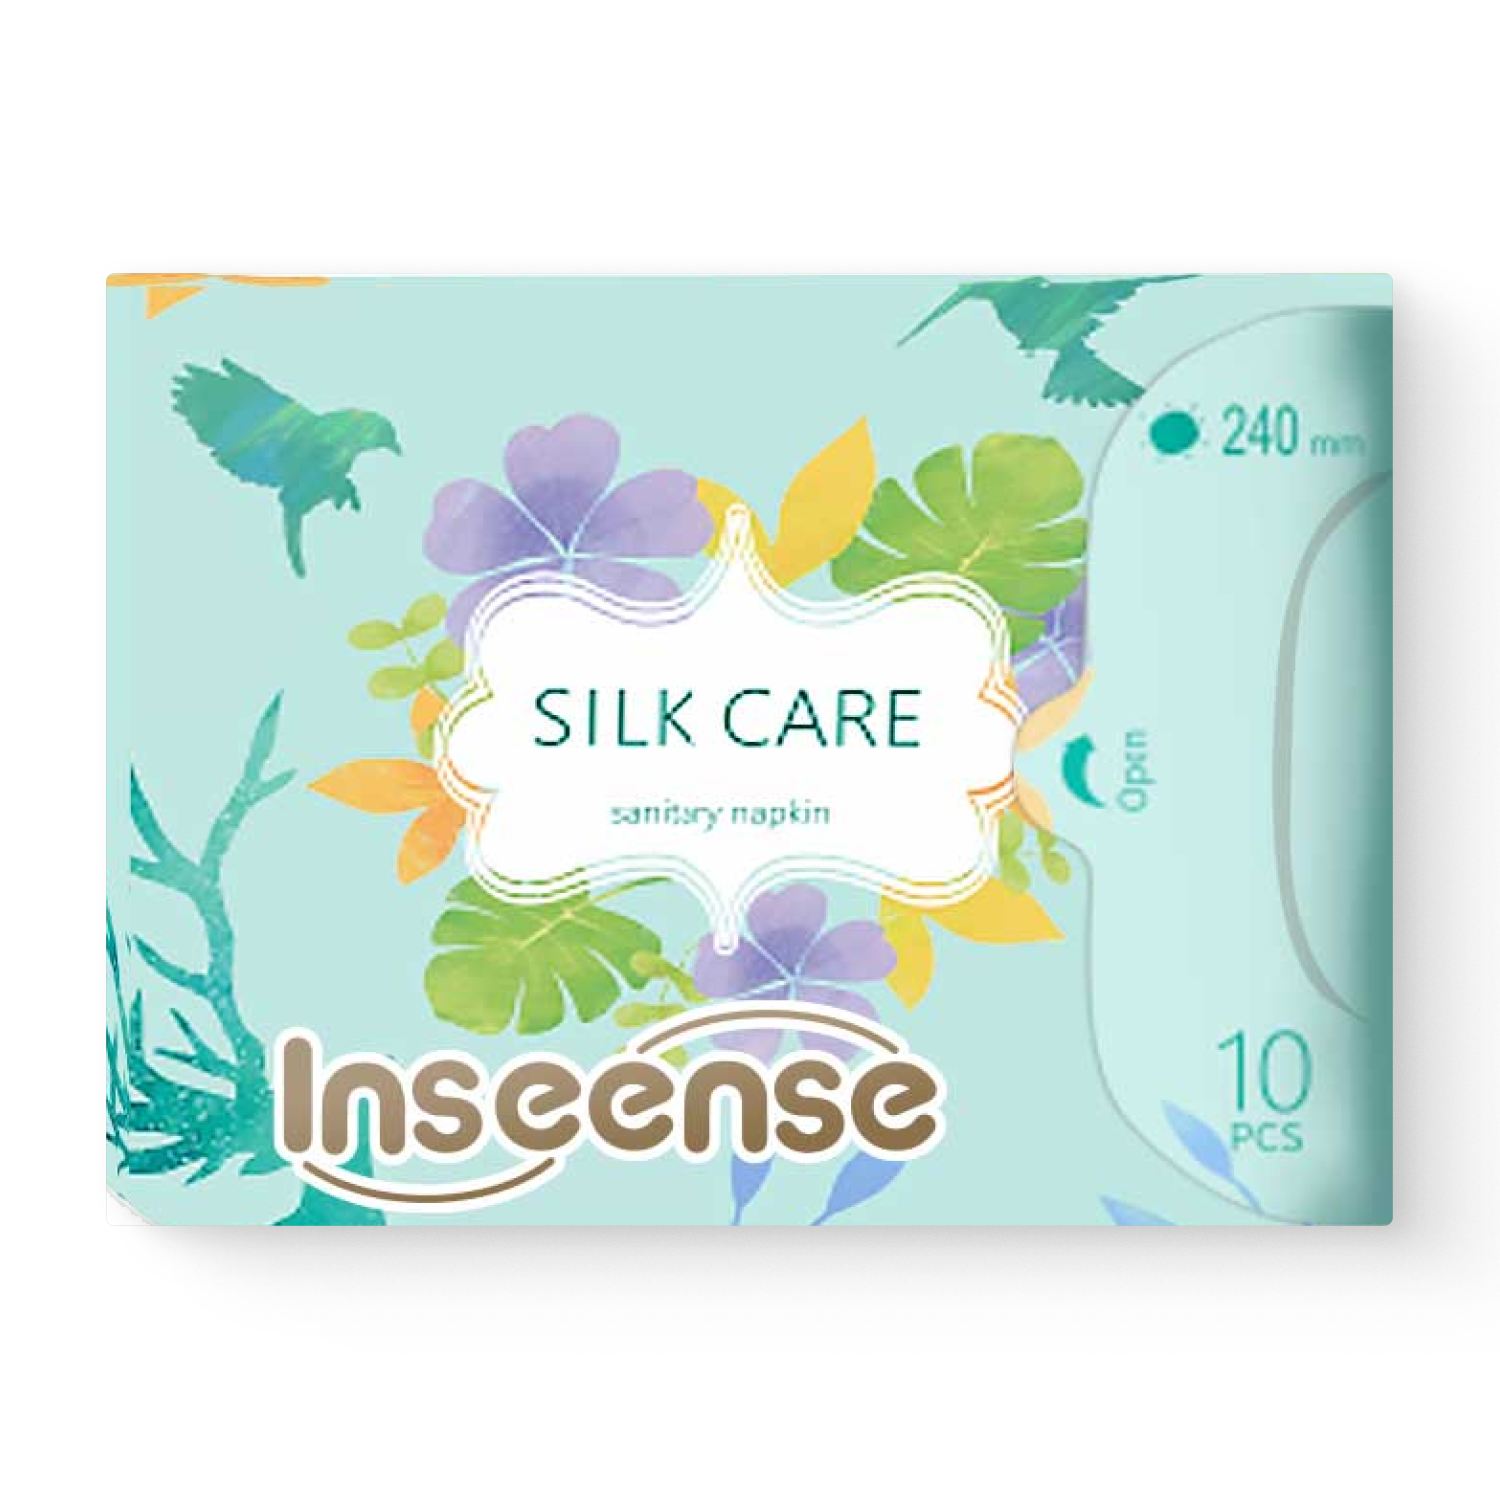 Прокладки INSEENSE Silk Care женские гигиенические дневные 4 капли 240 мм 10 шт. прокладки mipao женские гигиенические дневные 5 упаковок по 10 шт